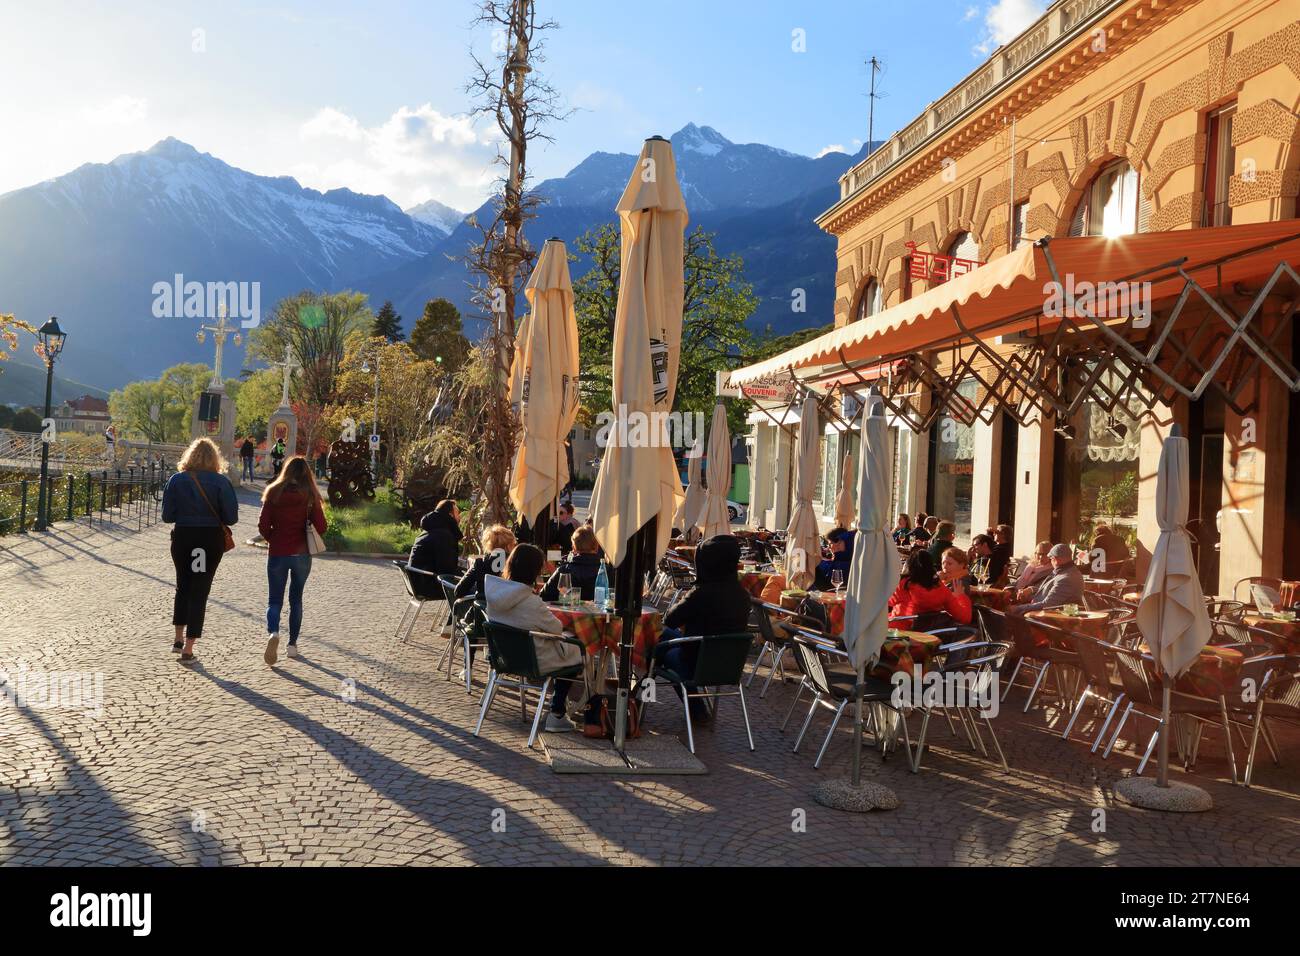 Café Darling. Passeggiata Lungo Passirio. Passerpromenade. Merano (Meran), South Tyrol (Alto Adige, Südtirol), Italy. Stock Photo